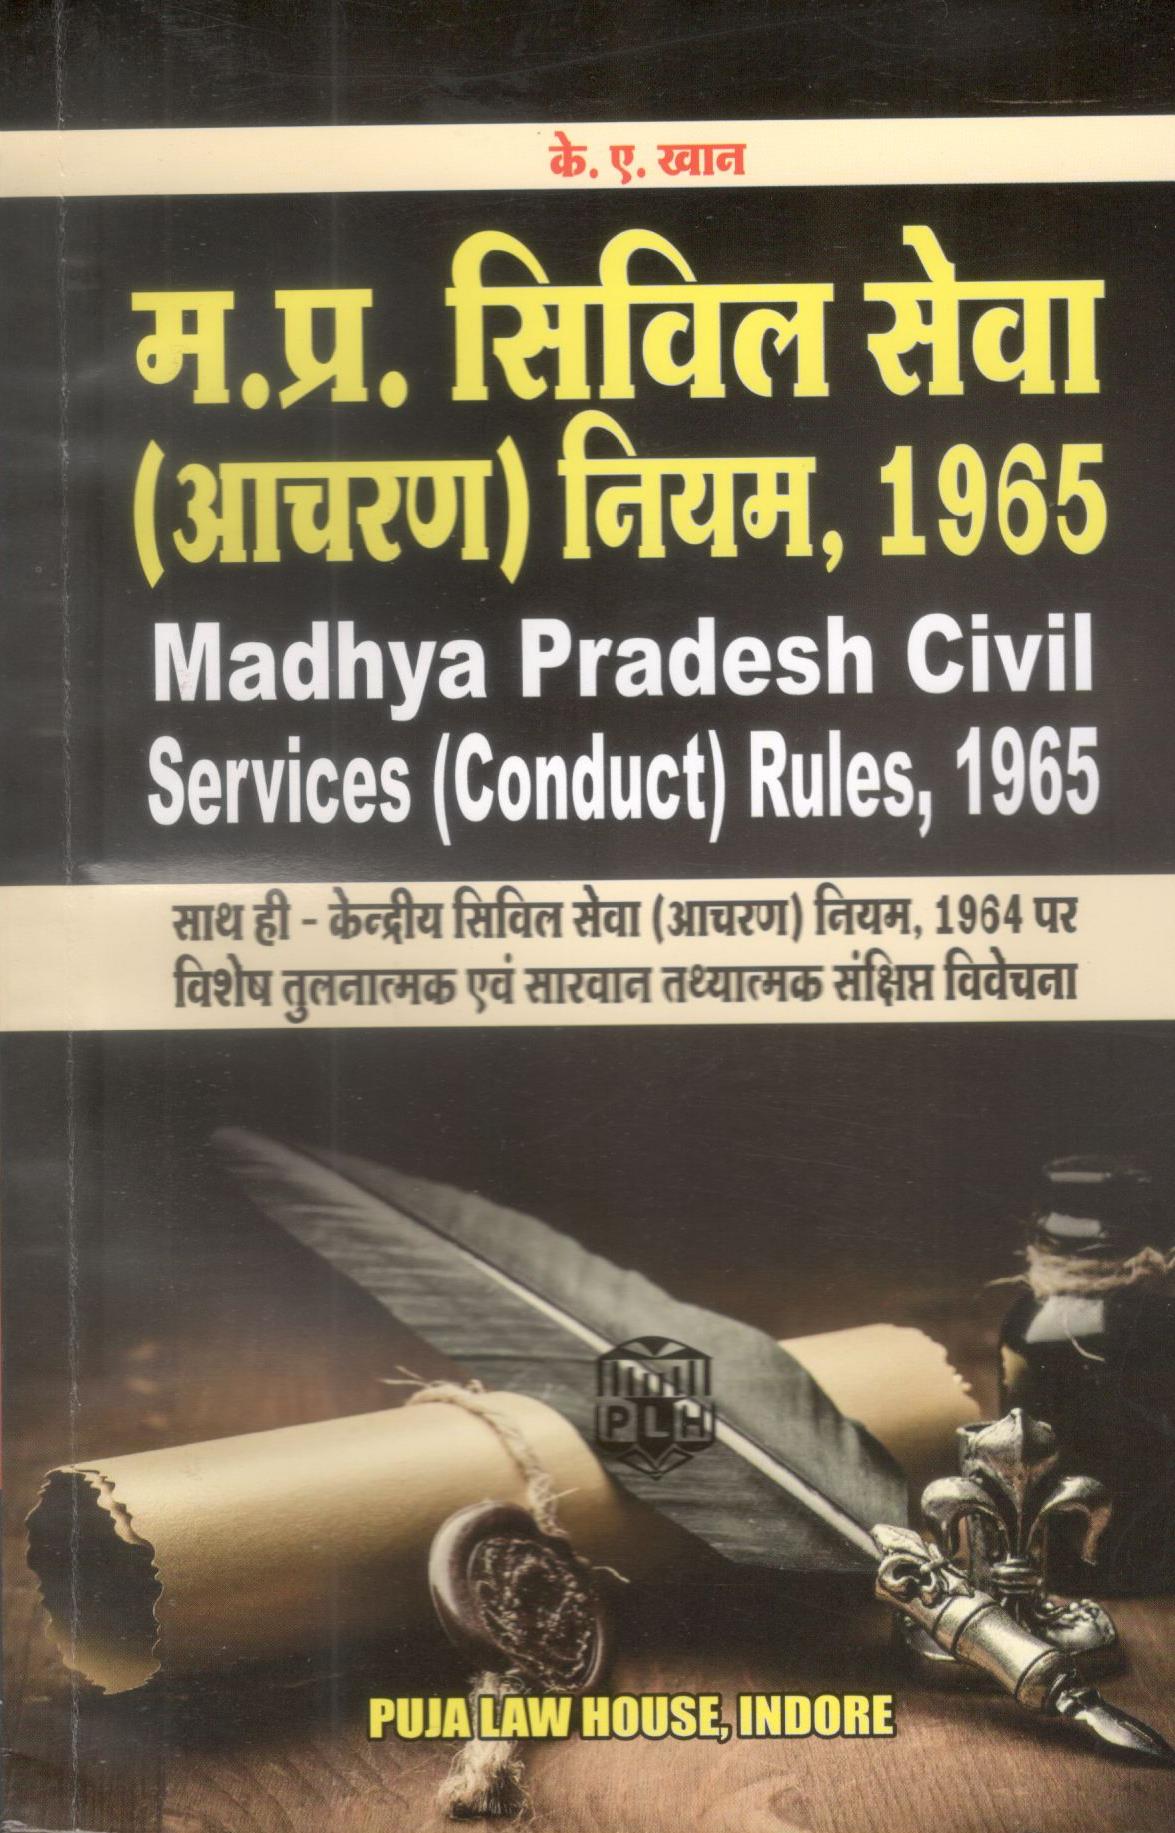  Buy The Madhya Pradesh Civil Services (Conduct)  Rules, 1965 / शंकरलाल सोनी |  के.ए. खान – मध्य प्रदेश सिविल सेवा (आचरण) नियम, 1965 साथ ही केंद्रीय सिविल सेवा (आचरण) नियम, 1964 पर विशेष तुलनात्मक एवं सारवान तथयातमक एवं संक्षिप्त विवेचना